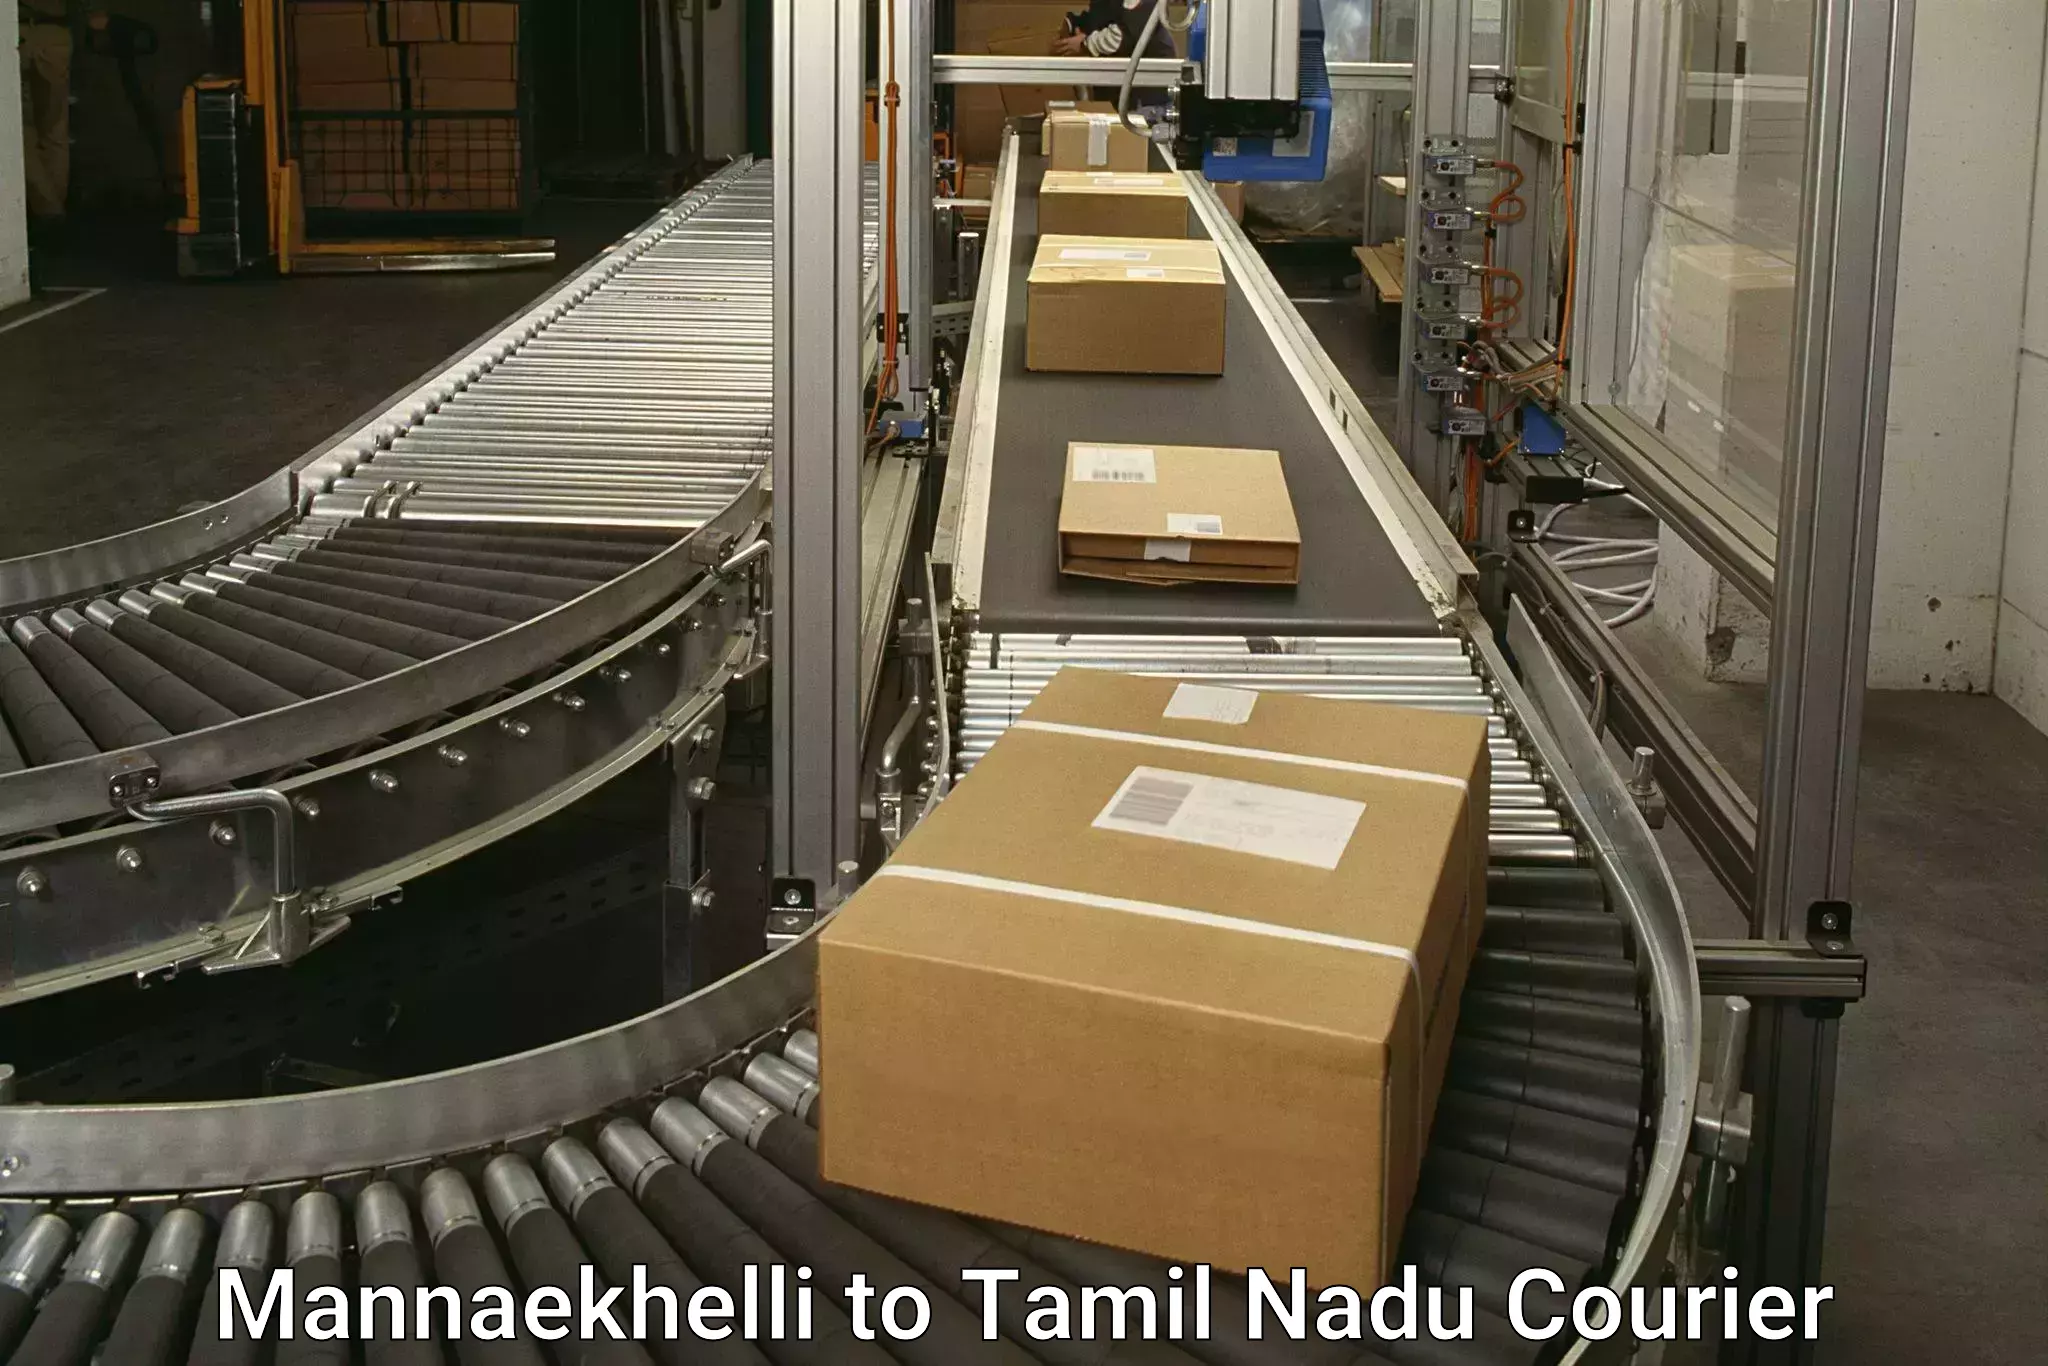 International courier rates Mannaekhelli to Rathinasabapathy Puram